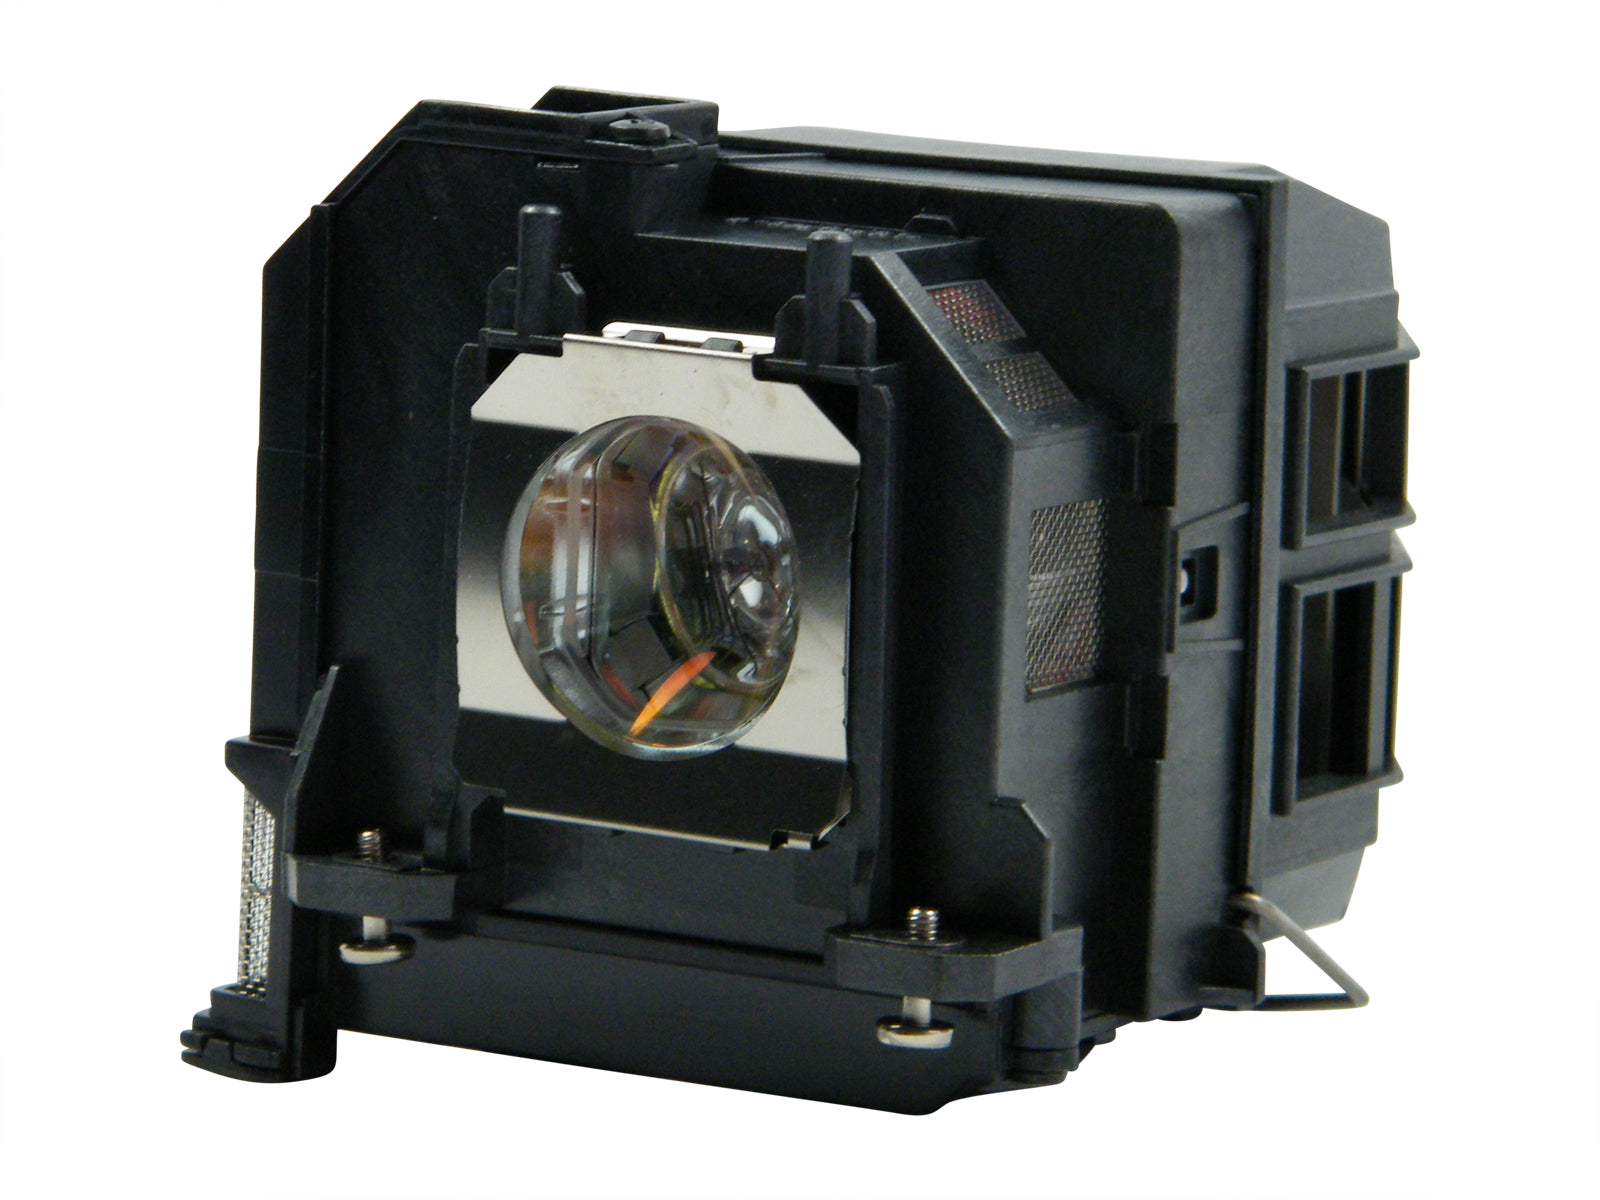 azurano Beamerlampe kompatibel mit Epson ELPLP79 Ersatzlampe mit Gehäuse - Bild 1